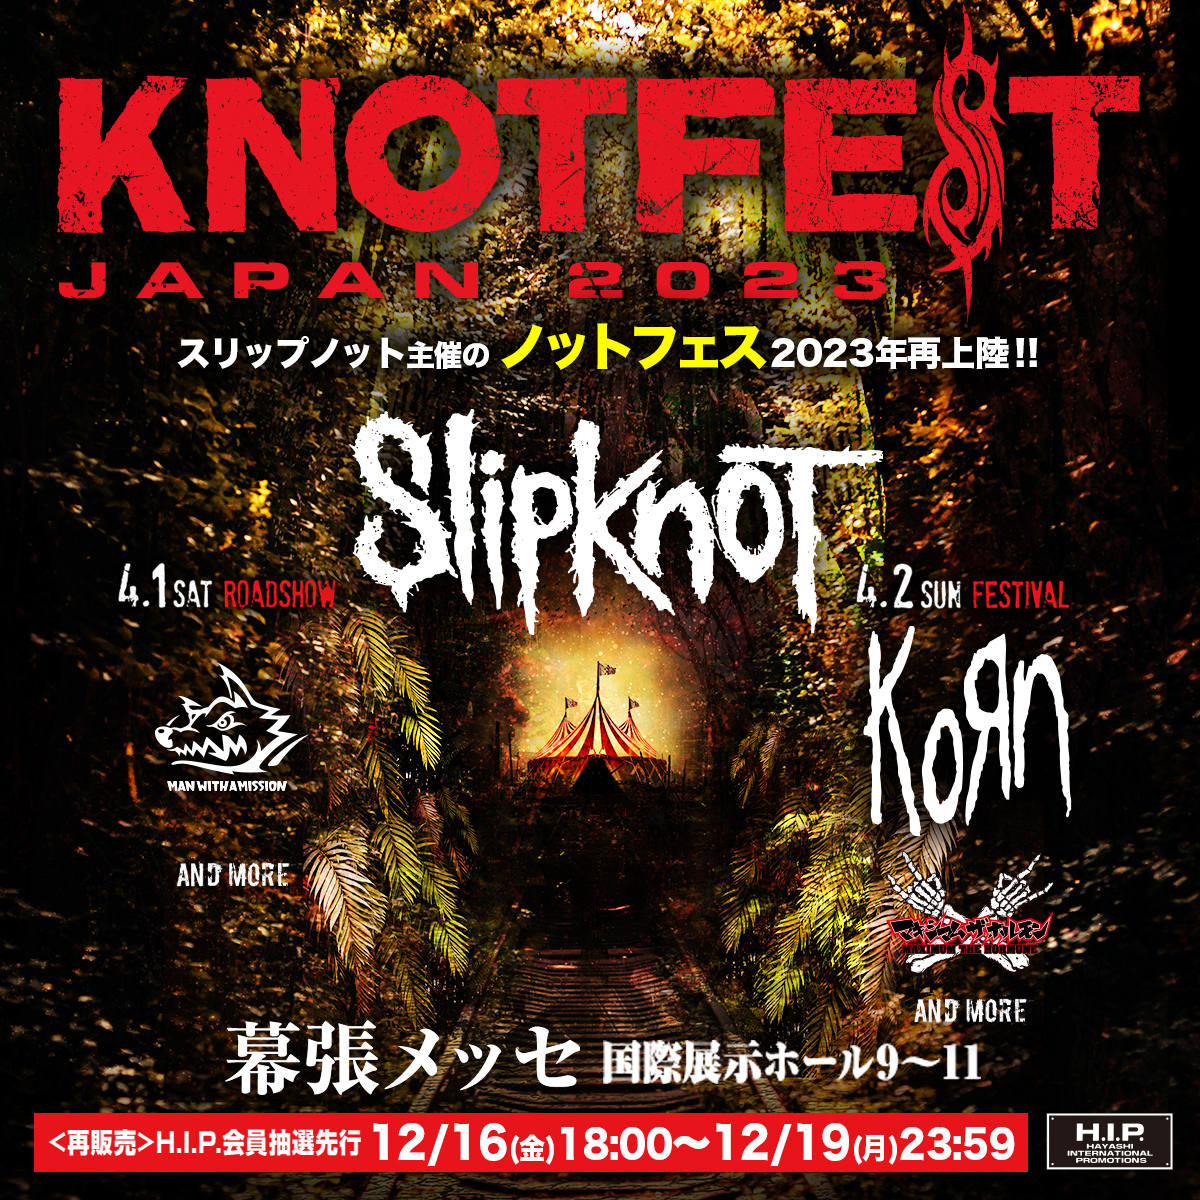 『KNOTFEST JAPAN 2023』